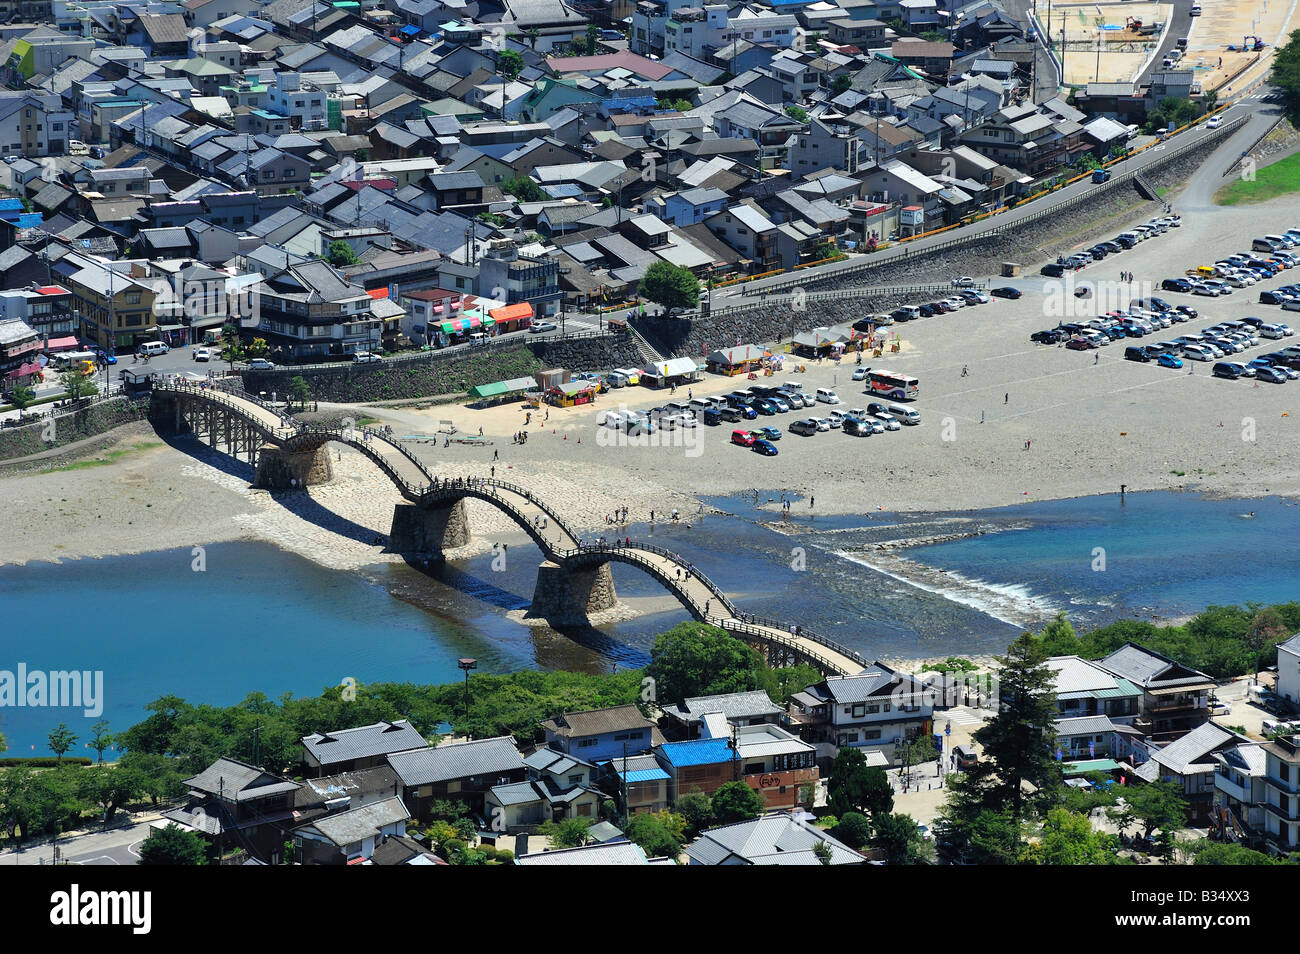 Kintai bridge, iwakuni, préfecture de Yamaguchi, Chugoku, Honshu, japan Banque D'Images